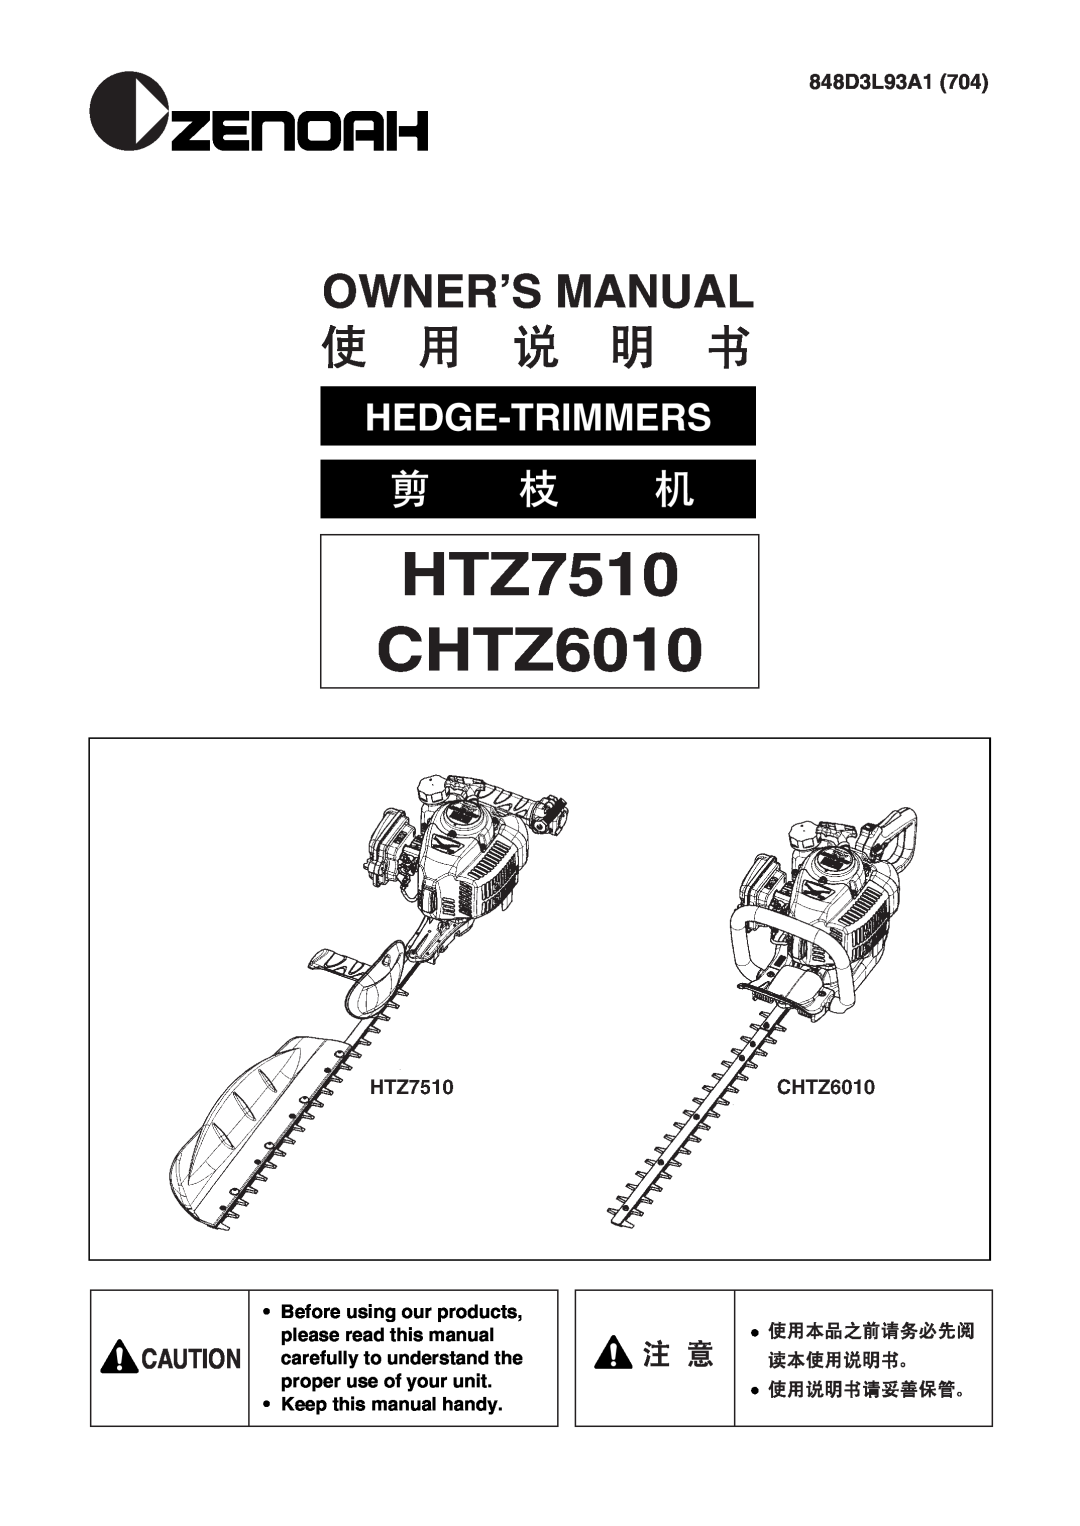 Zenoah HTZ7510, CHTZ6010 owner manual 848D3L93A1, Keep this manual handy, HTZ7510 CHTZ6010, Hedge-Trimmers 